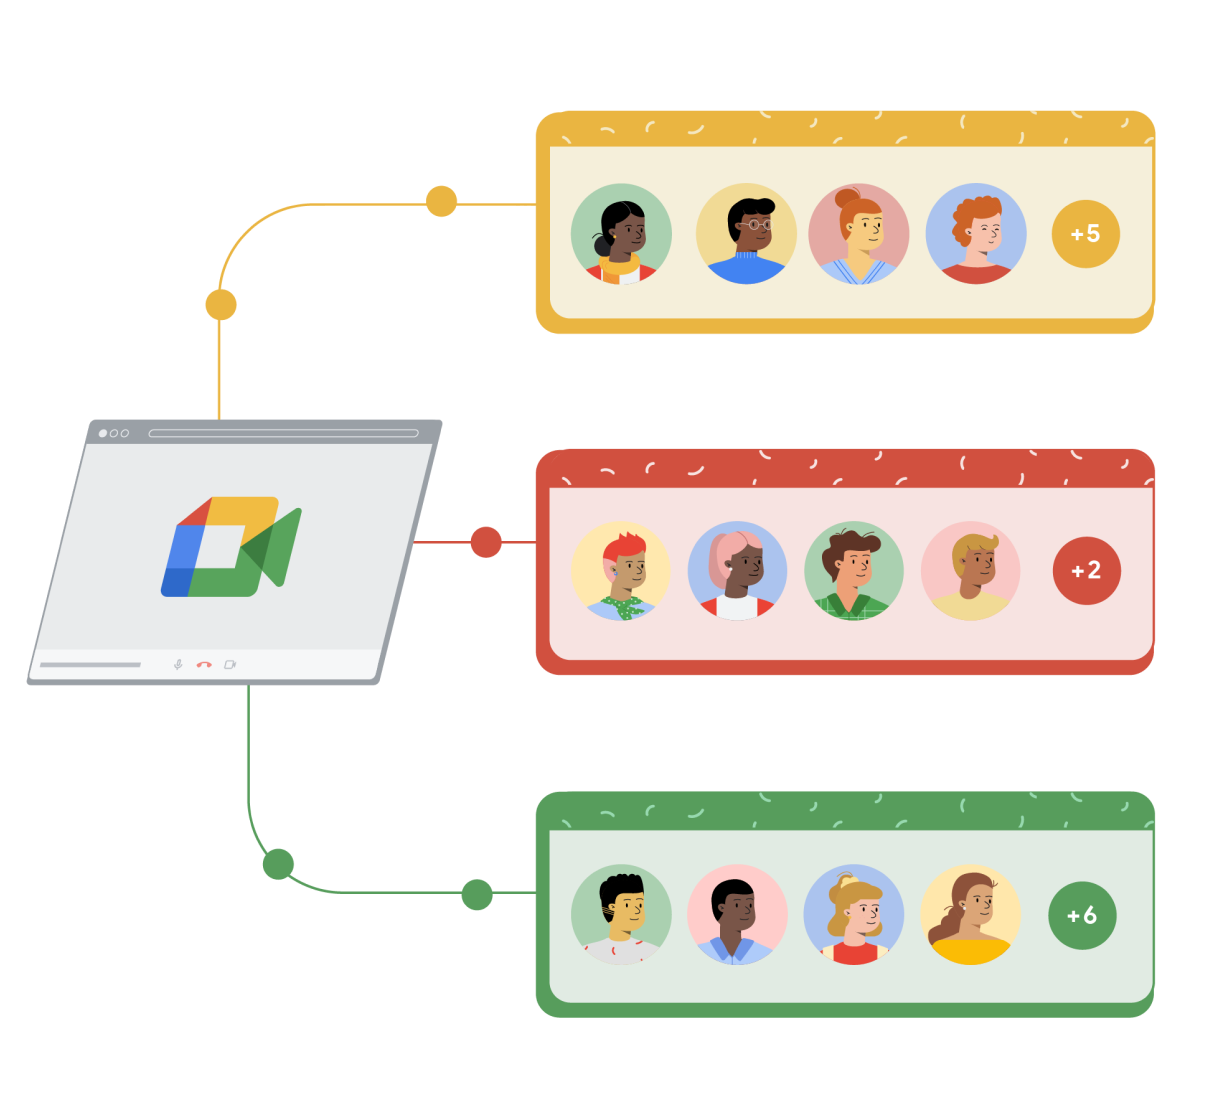 Una finestra di browser con Google Meet collegata a tre rettangoli di diverso colore: giallo, rosso e verde. Ogni rettangolo contiene quattro cerchi, ciascuno con il disegno di una persona, più un quinto cerchio a destra con il segno più seguito da un numero, che rappresenta altre persone che partecipano alla chiamata di Google Meet.